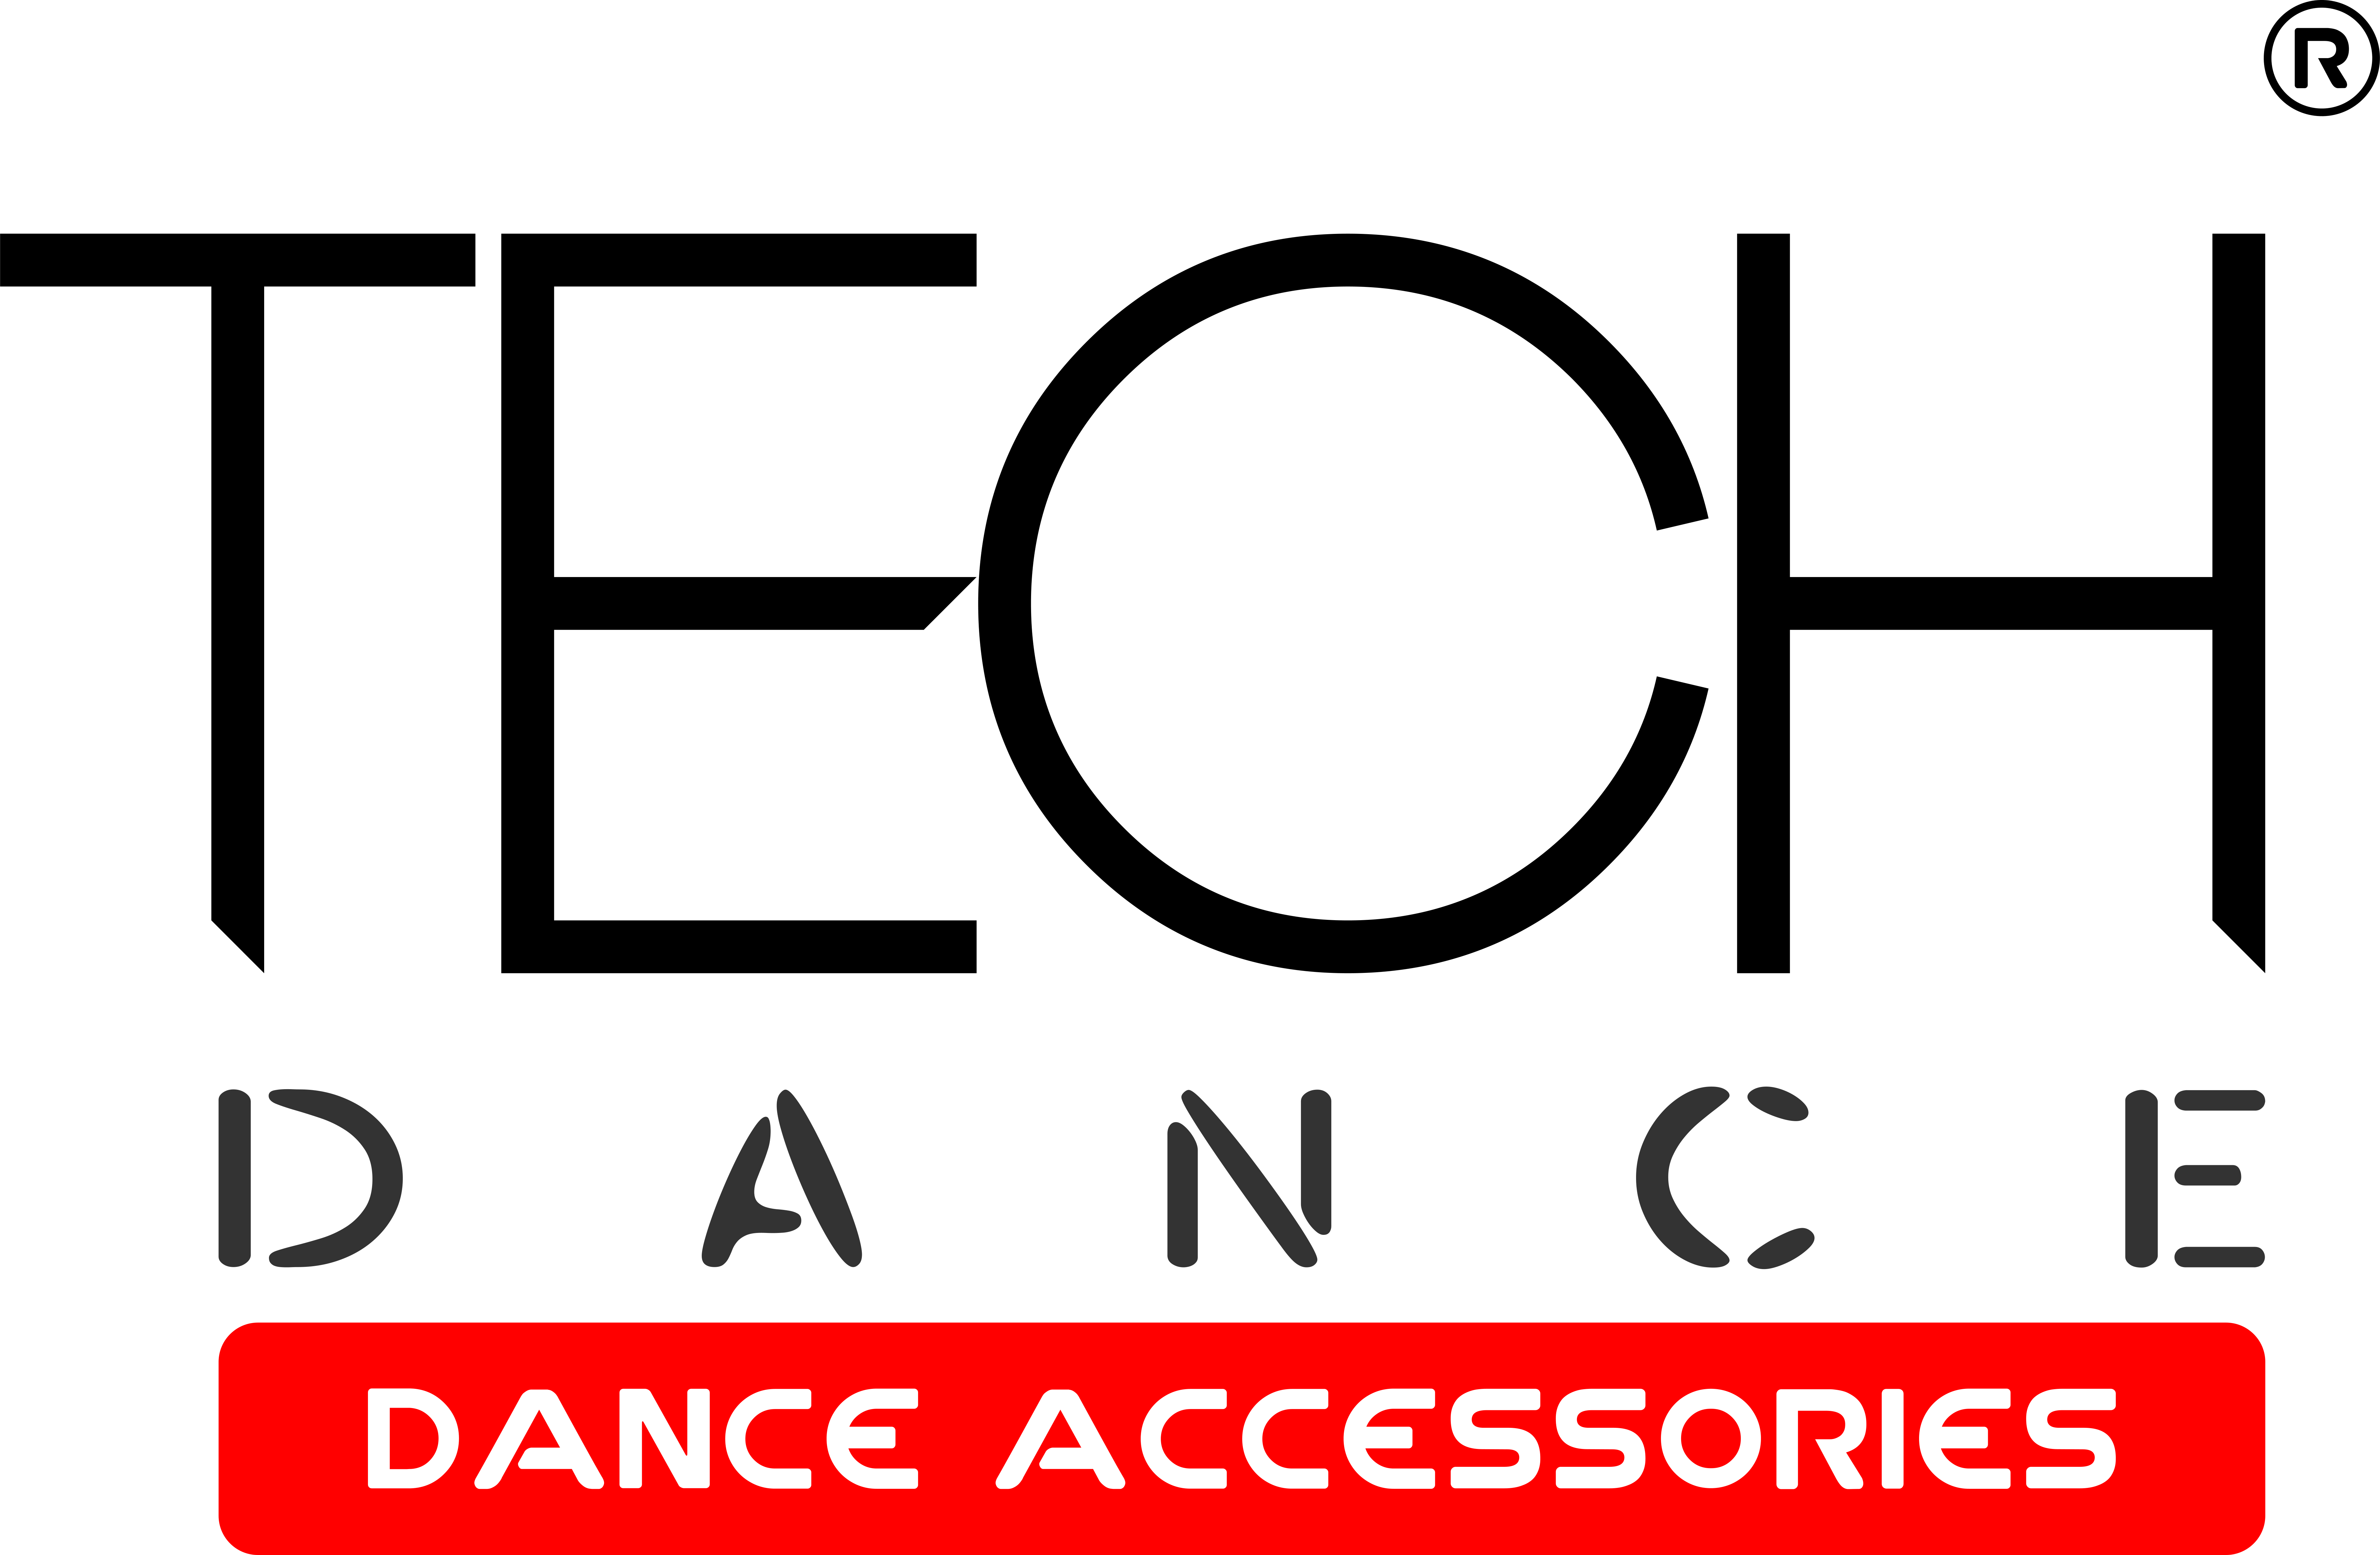 Tech Dance